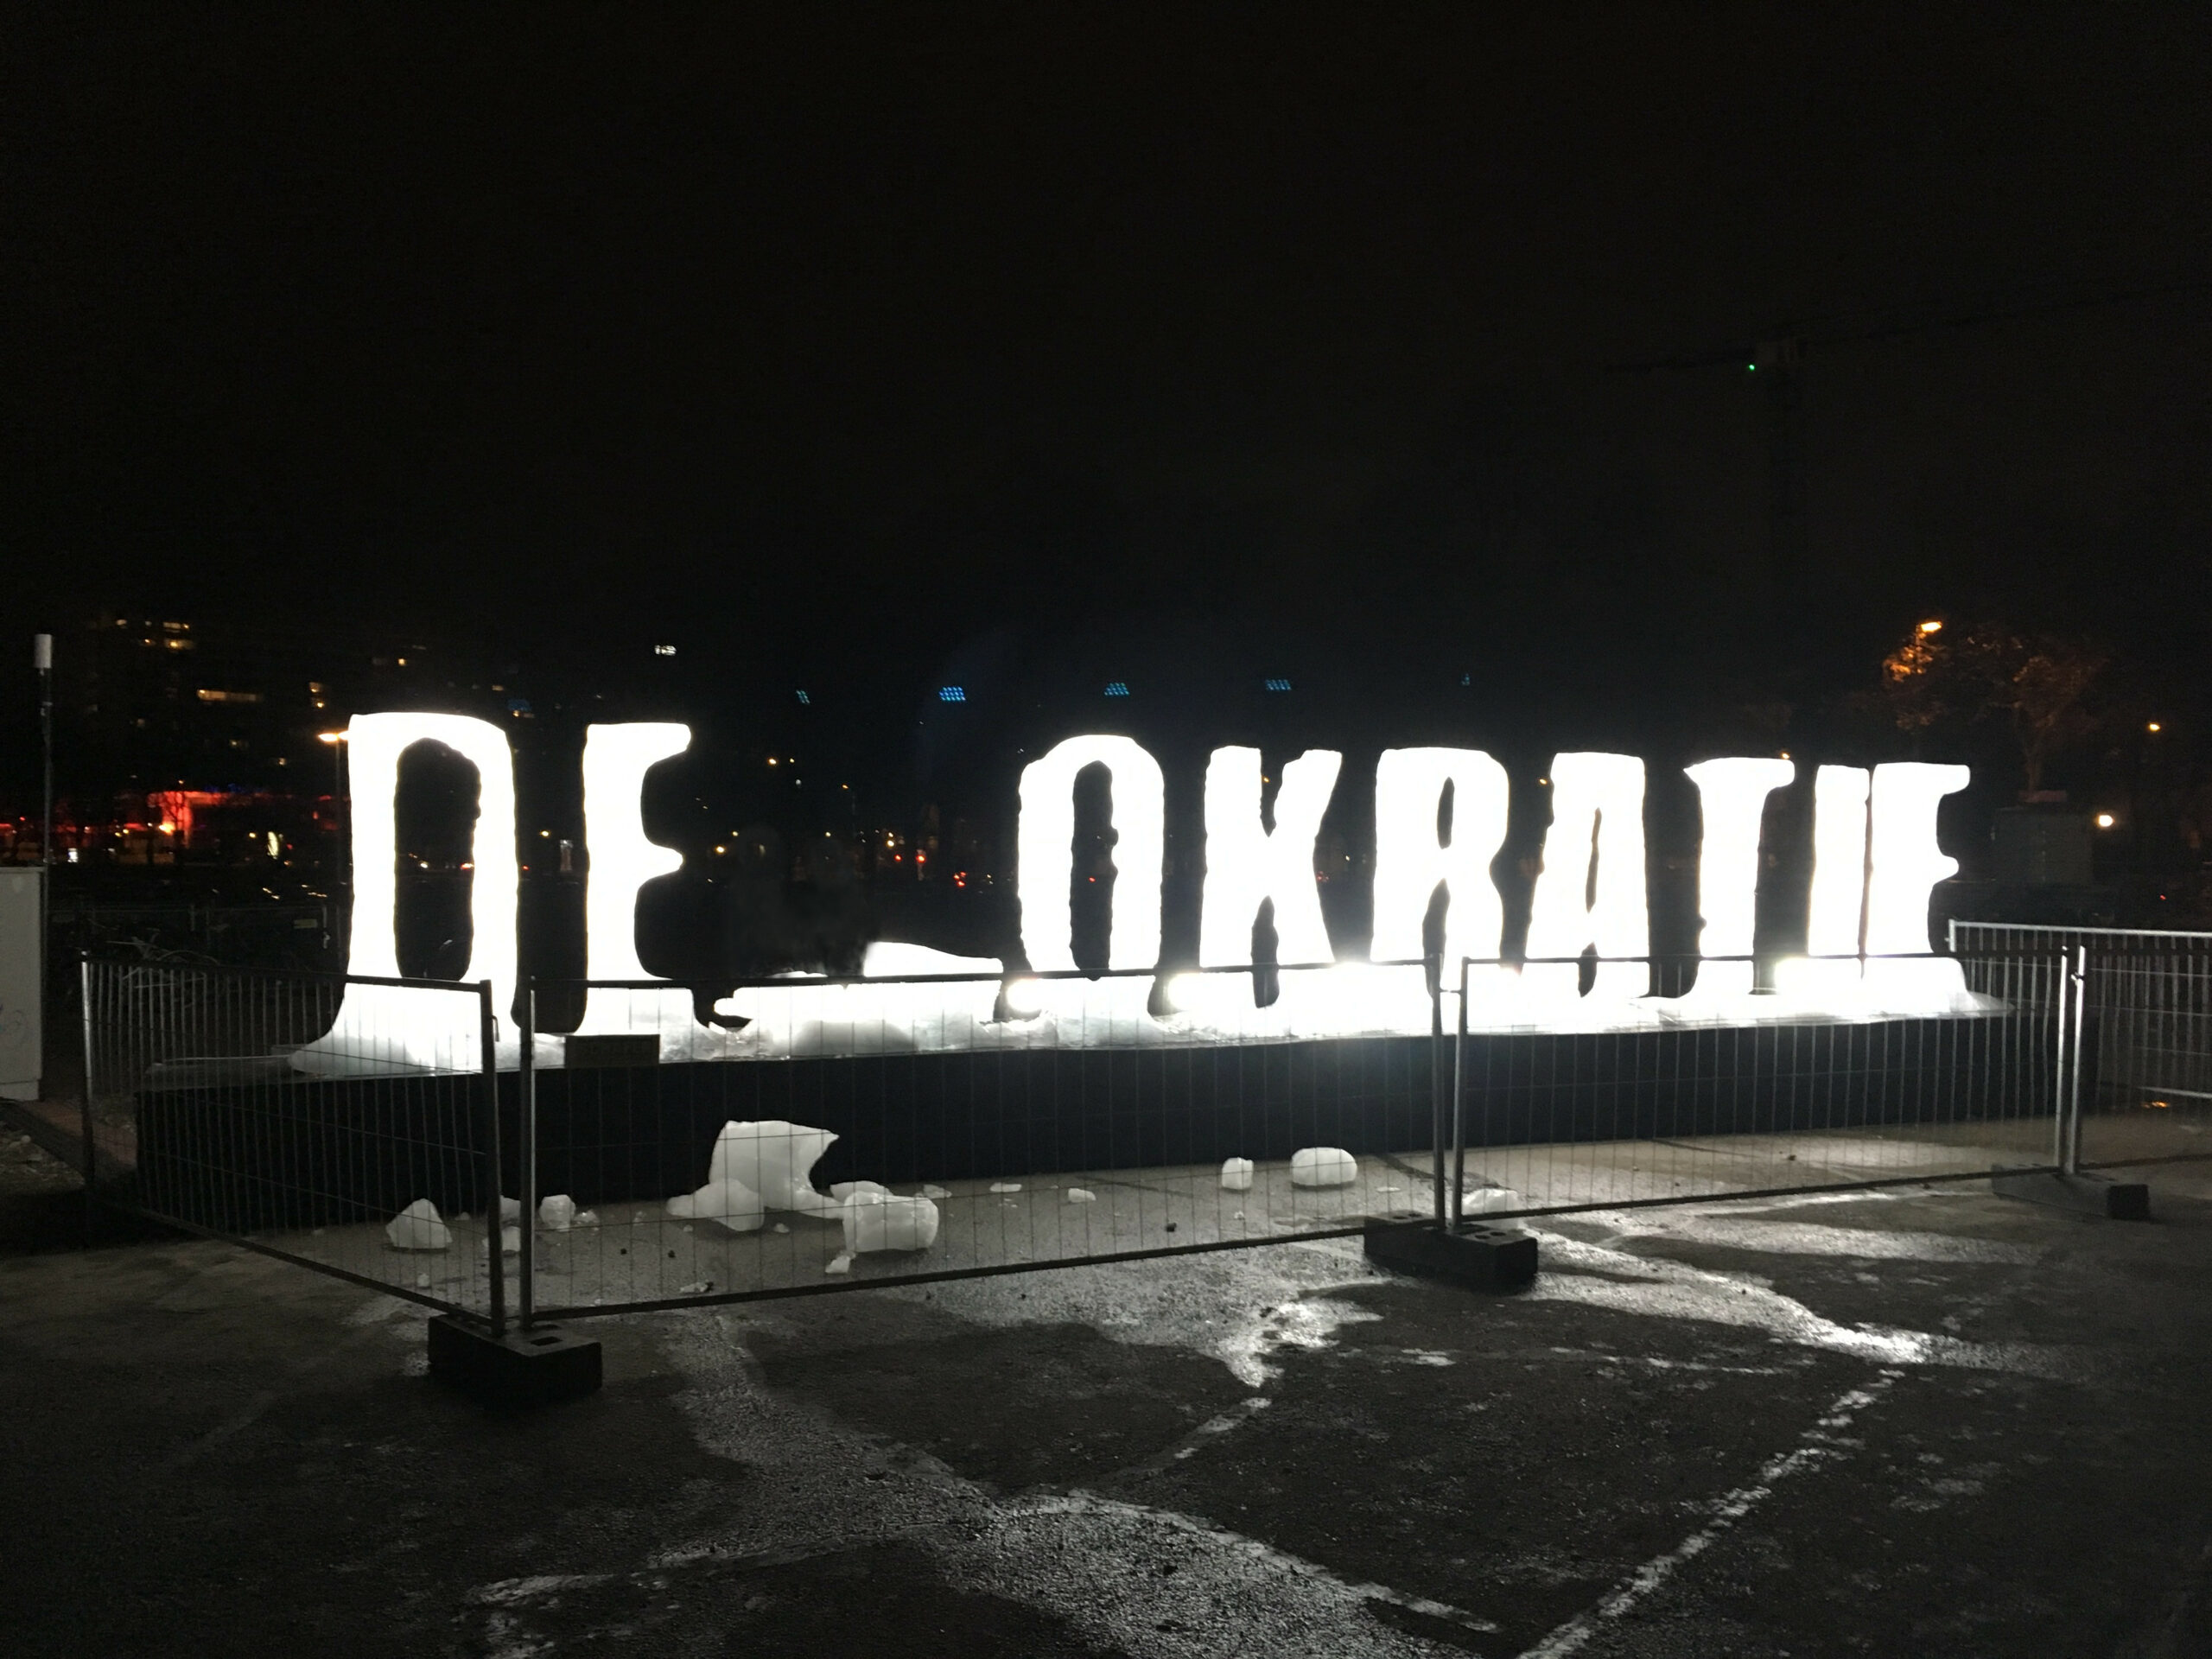 Foto des Schriftzugs Demokratie: Die Buchstaben aus Eis geformt, das M liebt zerbrochen daneben, so dass zu lesen ist: "DE OKRATIE"